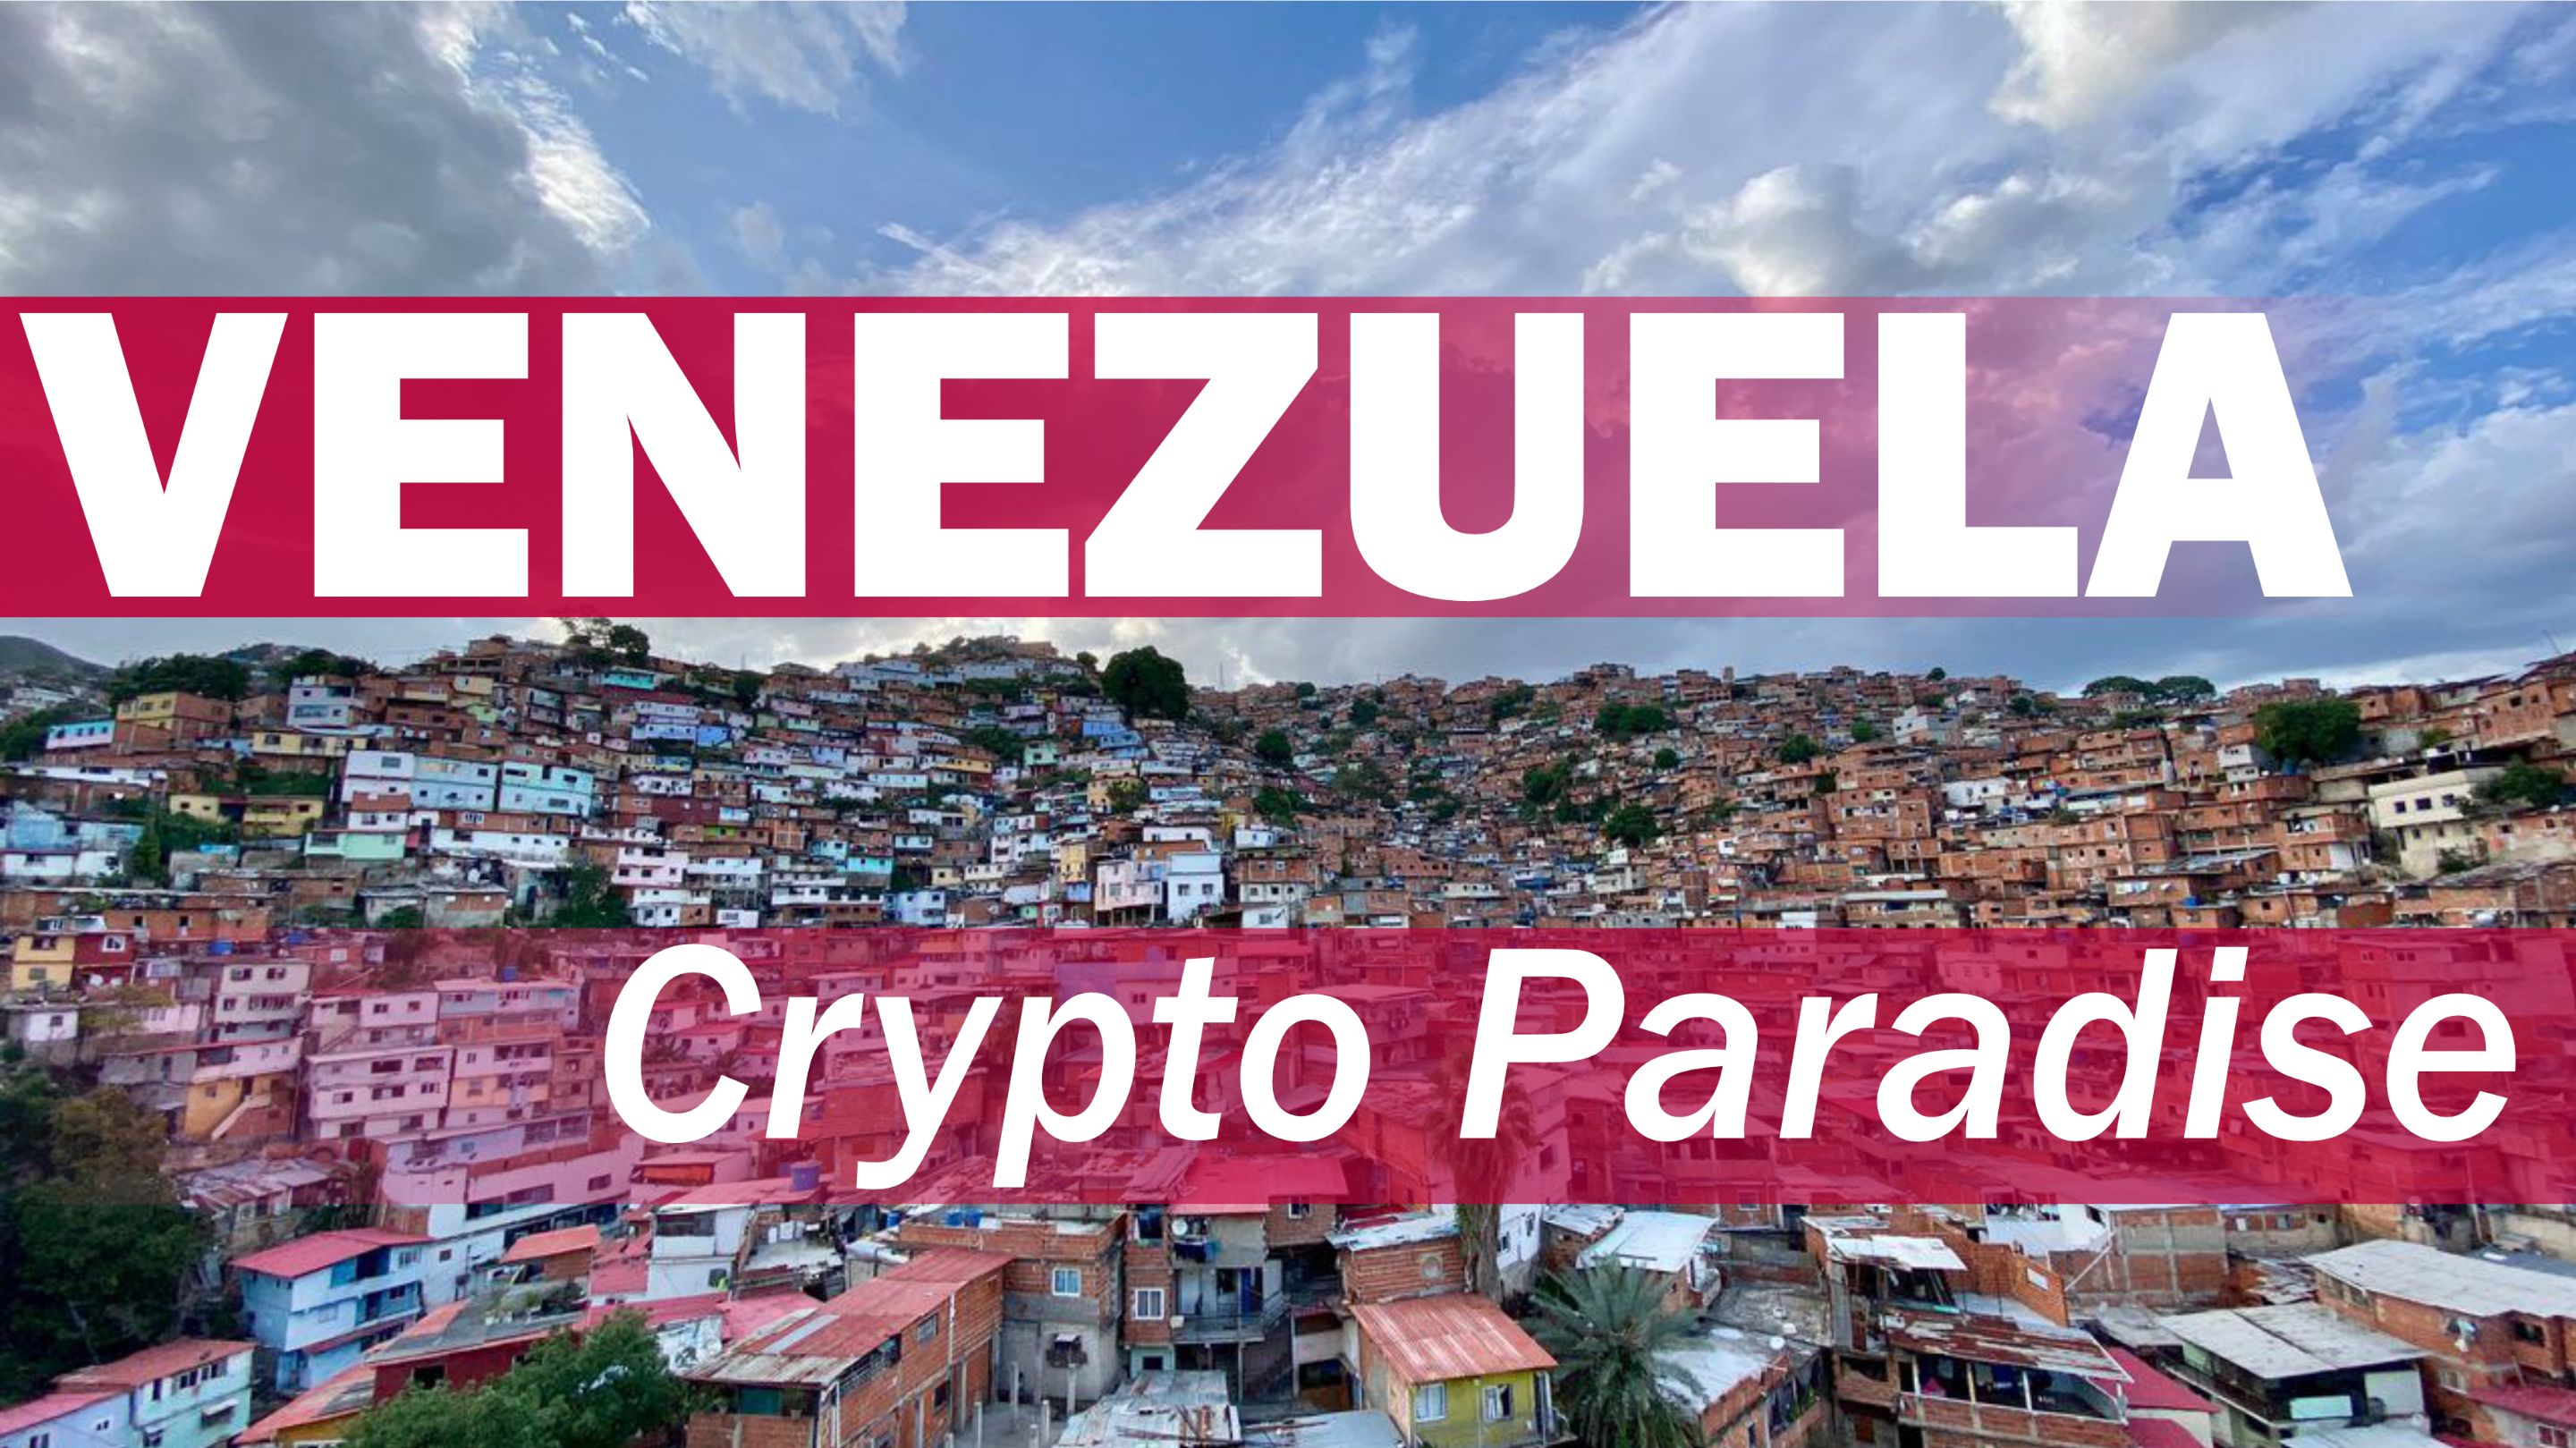 VENEZUELA crypto paradise.png